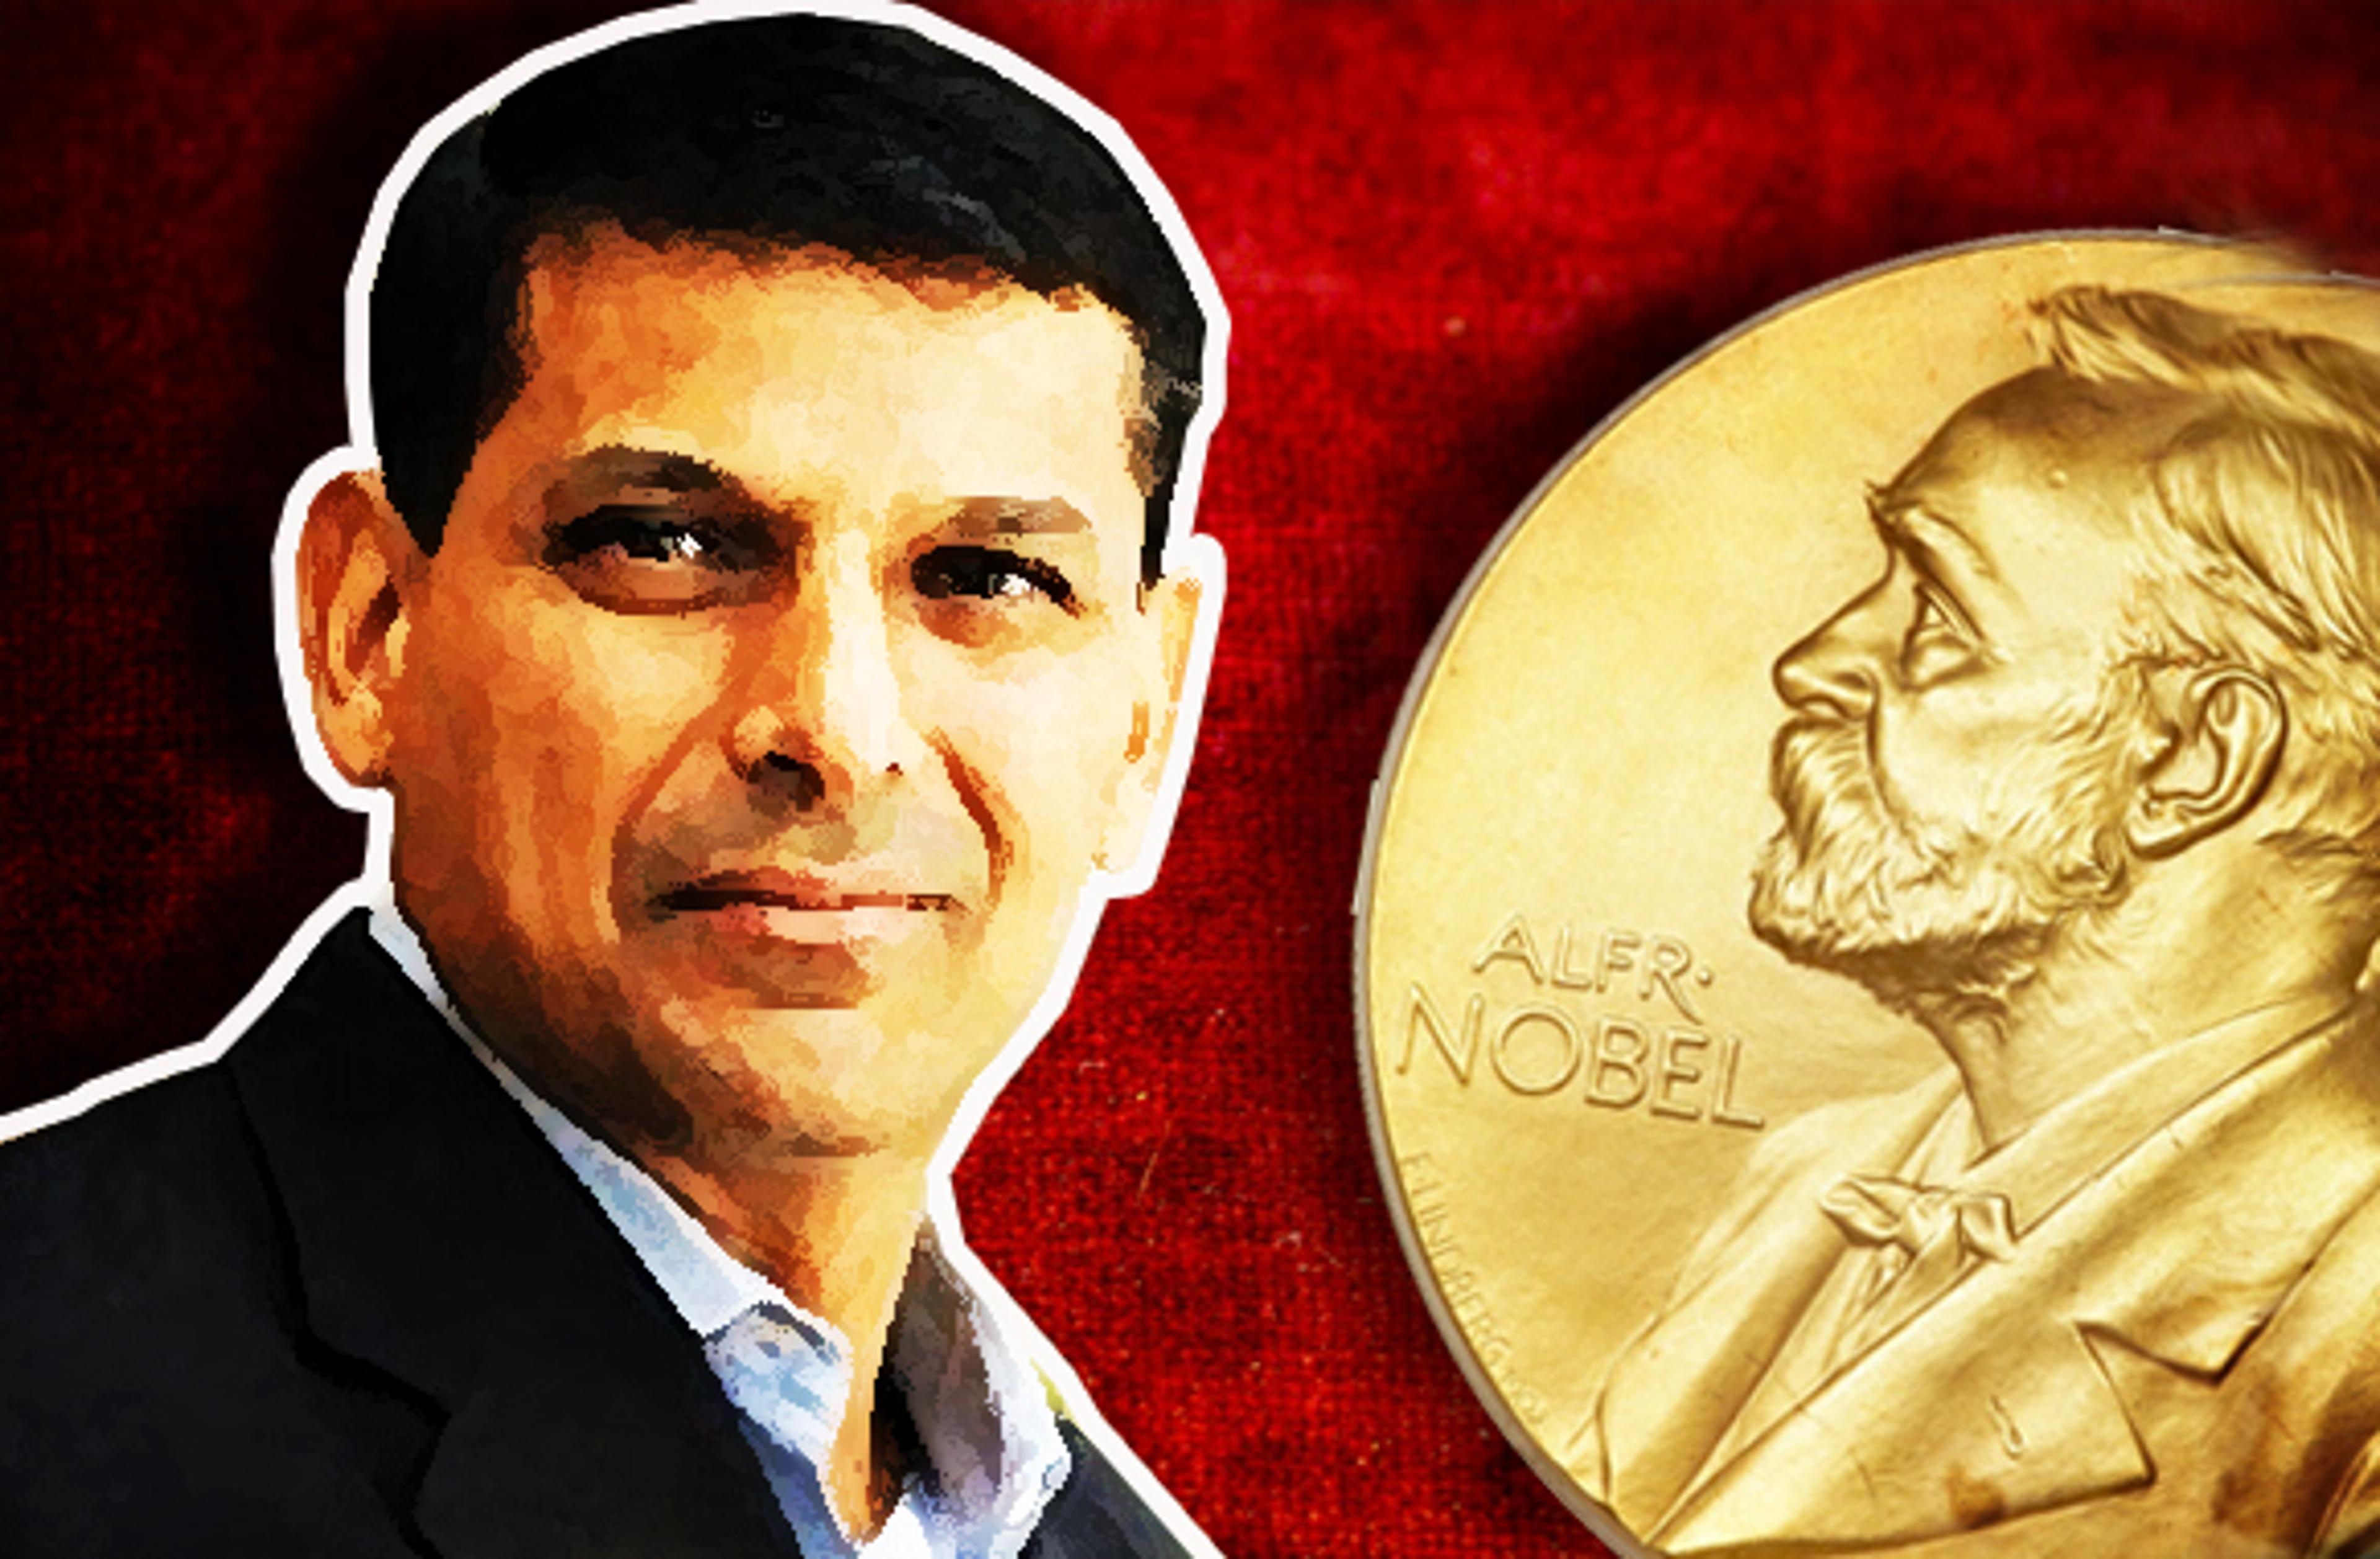 रघुराम राजन को मिल सकता है नोबेल पुरस्कार, संभावितों की लिस्ट में शामिल